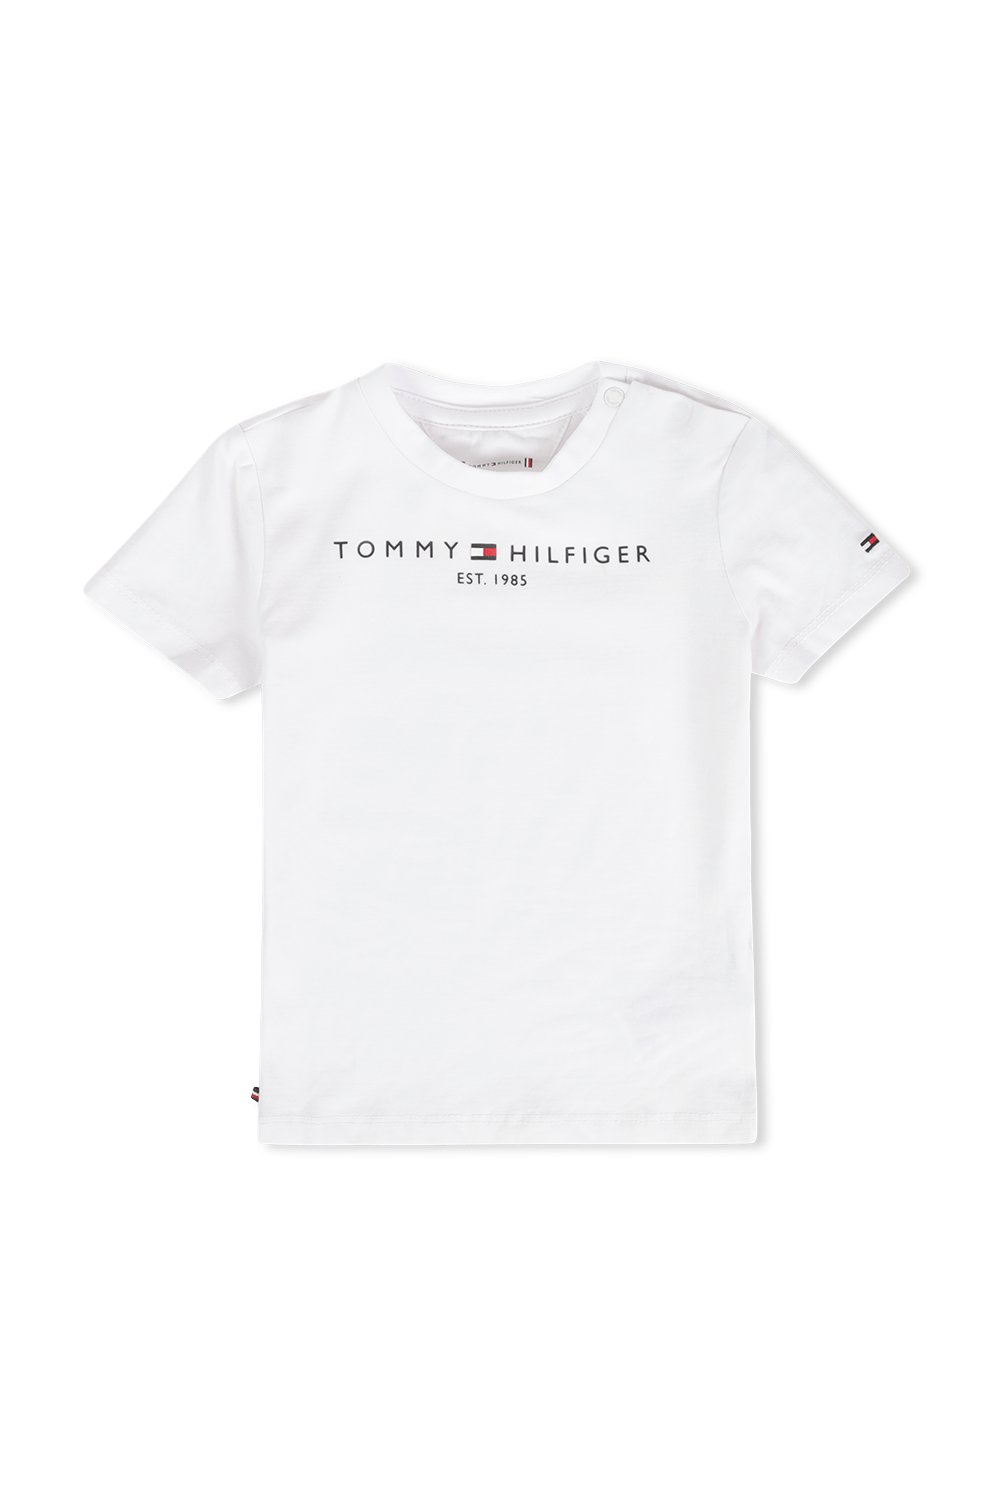 גילאי NB-24 חודשים חולצת לוגו אייקוני בלבן TOMMY HILFIGER KIDS